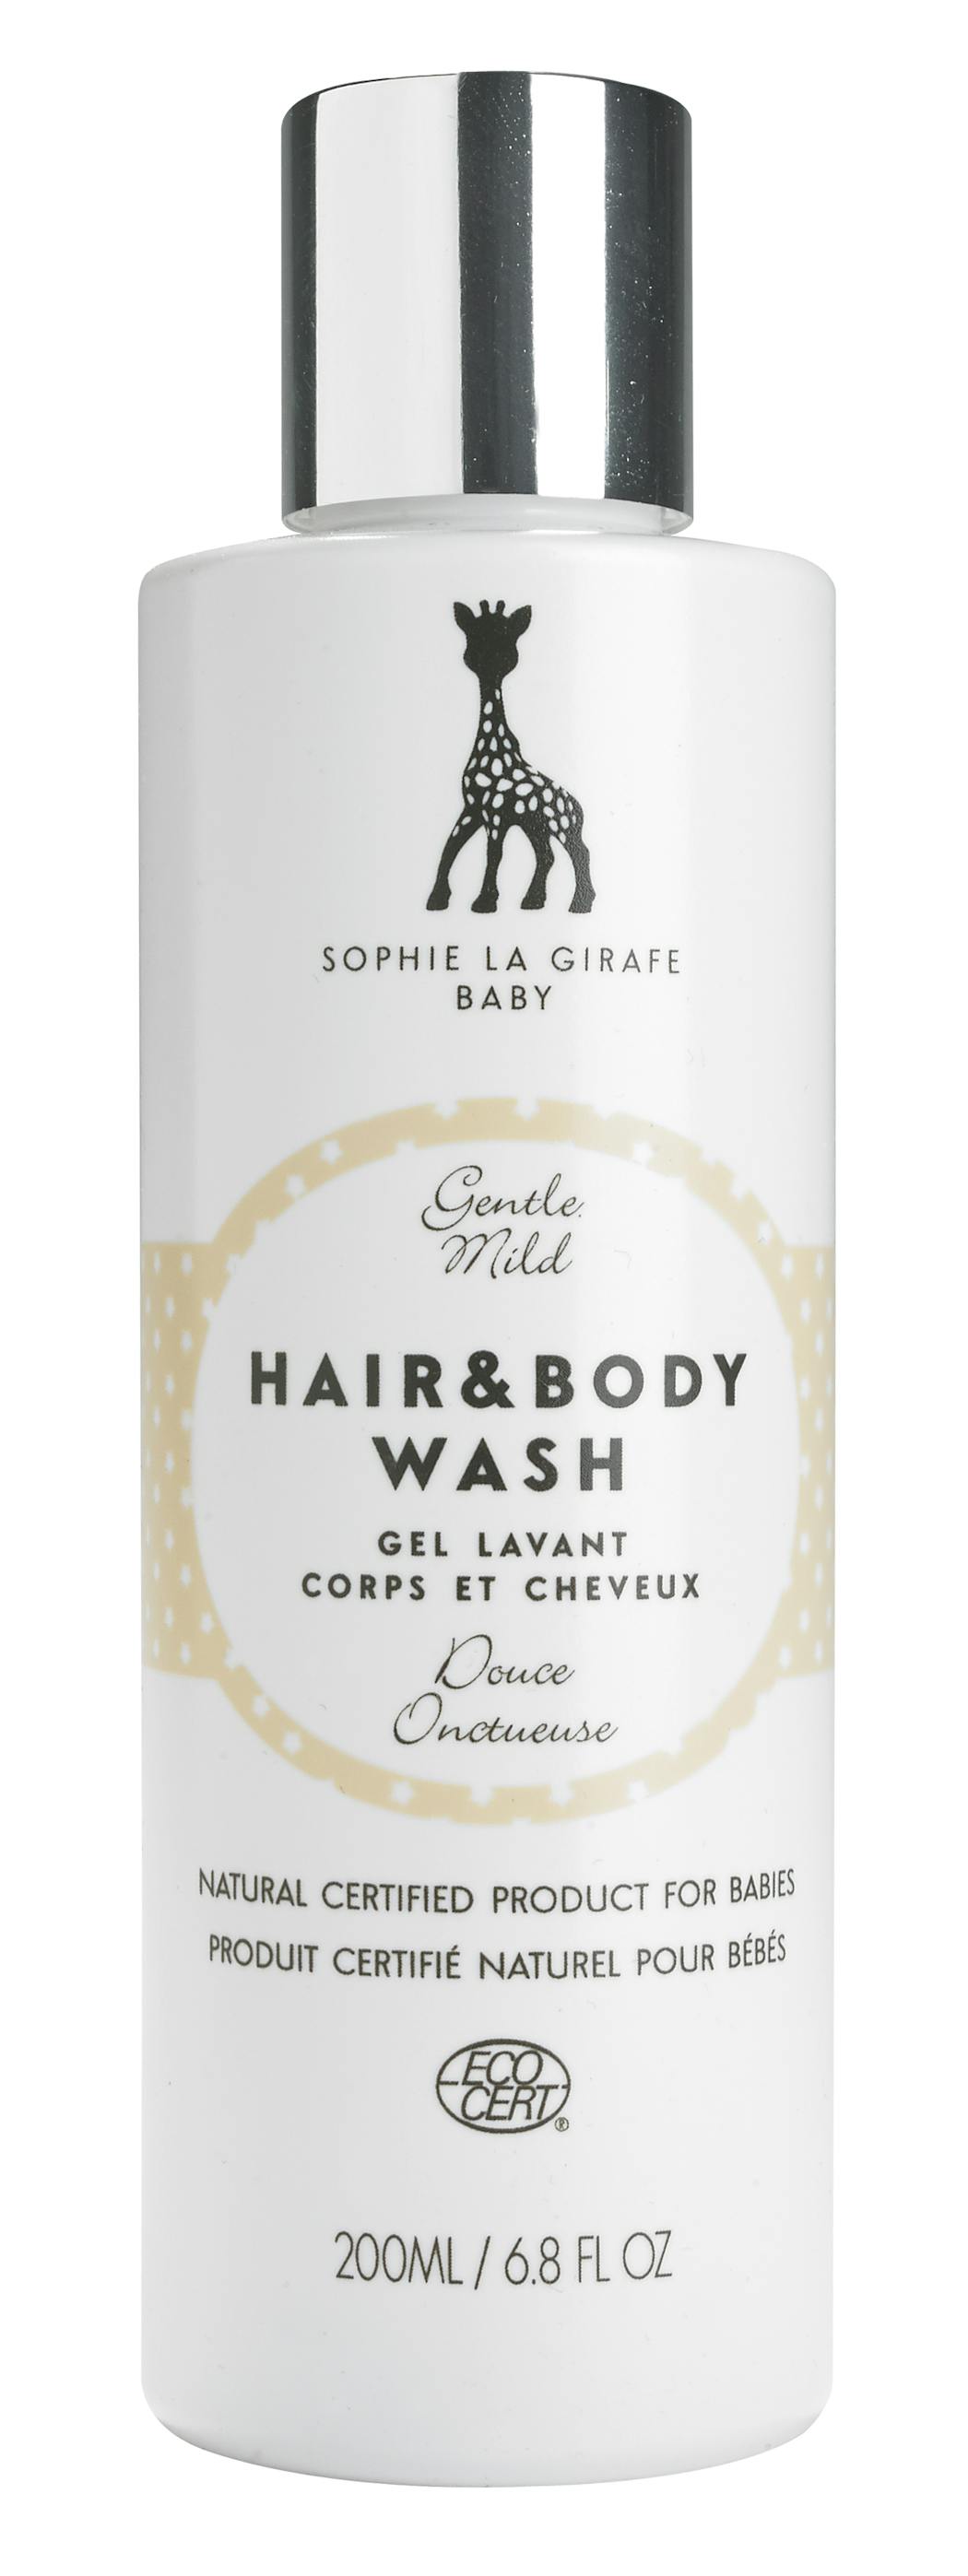 Lavant : Gel Lavant Corps et Cheveux, Sophie la Girafe Baby